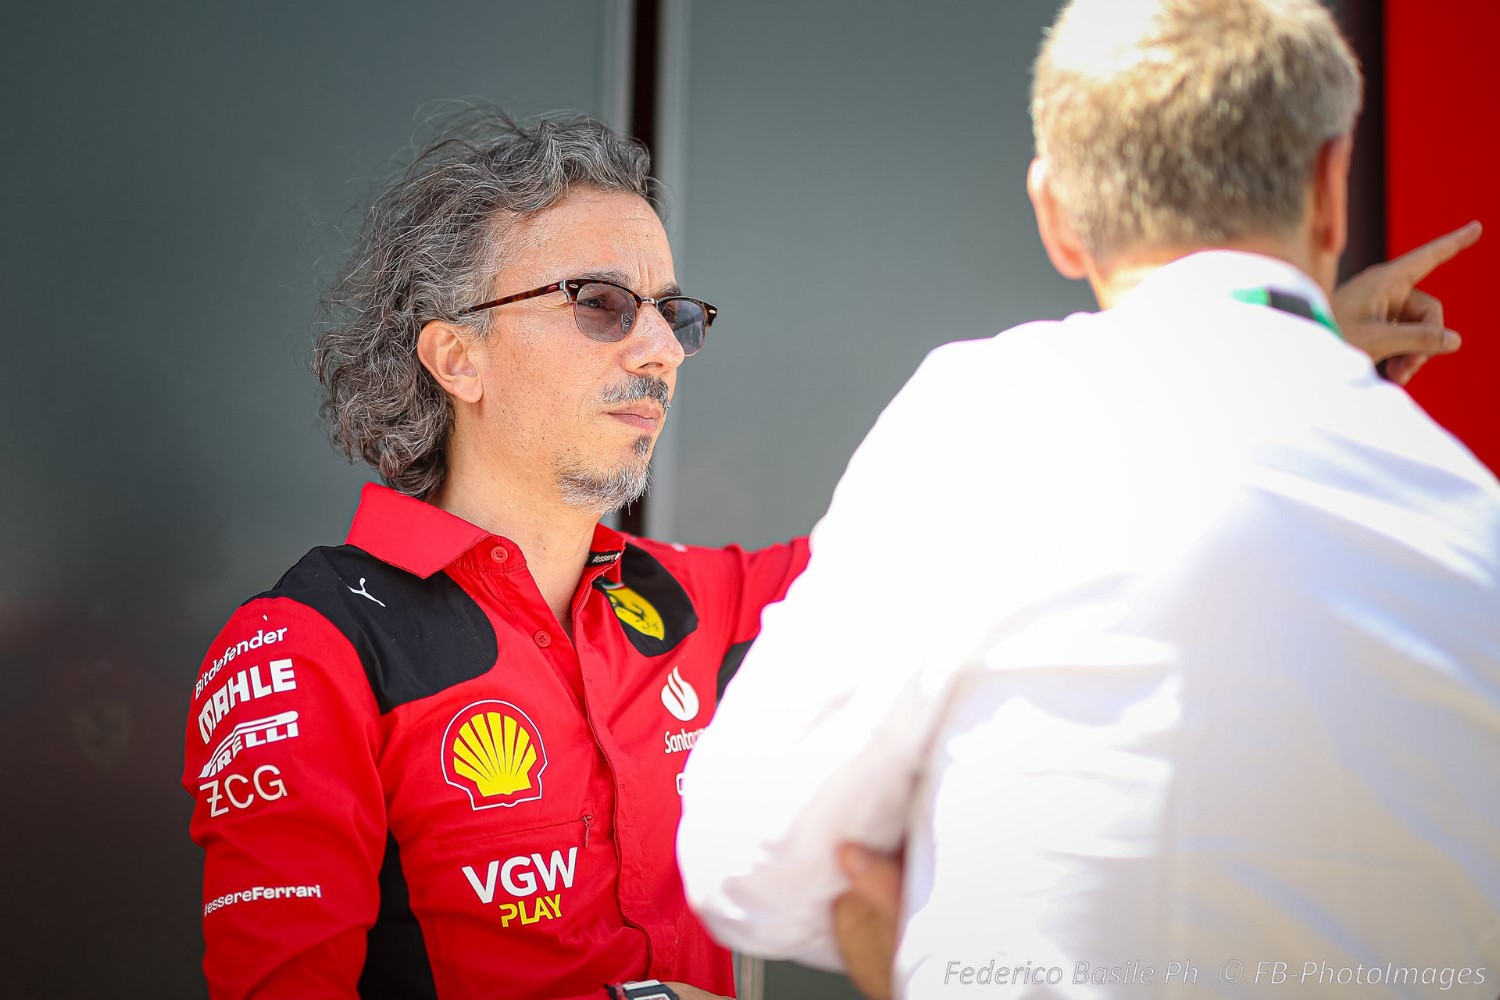 F1: Ferrari confirms Ioverno to replace Mekies - AutoRacing1.com